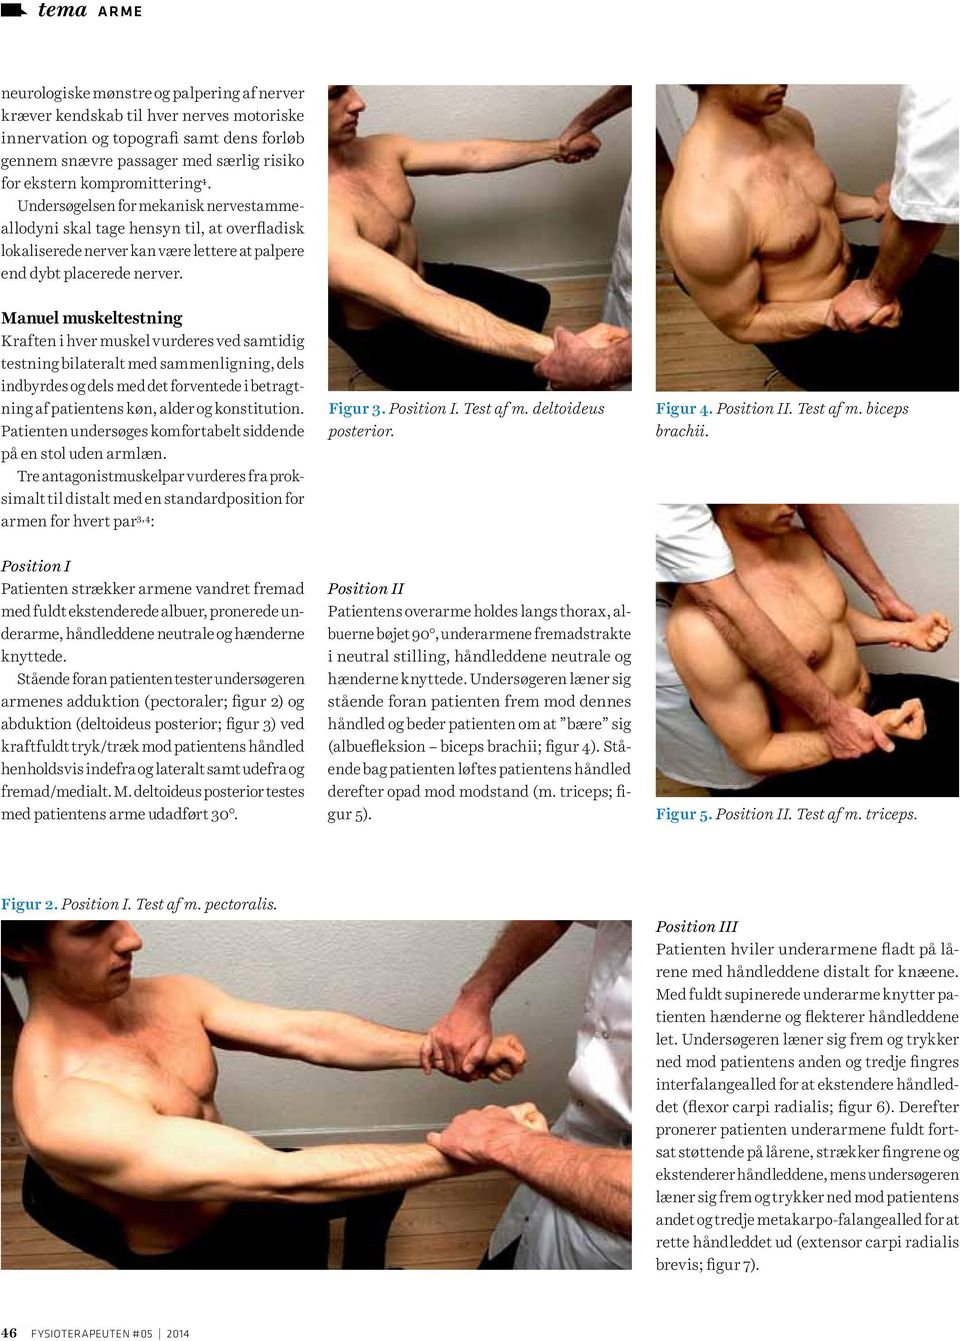 Manuel muskeltestning Kraften i hver muskel vurderes ved samtidig testning bilateralt med sammenligning, dels indbyrdes og dels med det forventede i betragtning af patientens køn, alder og